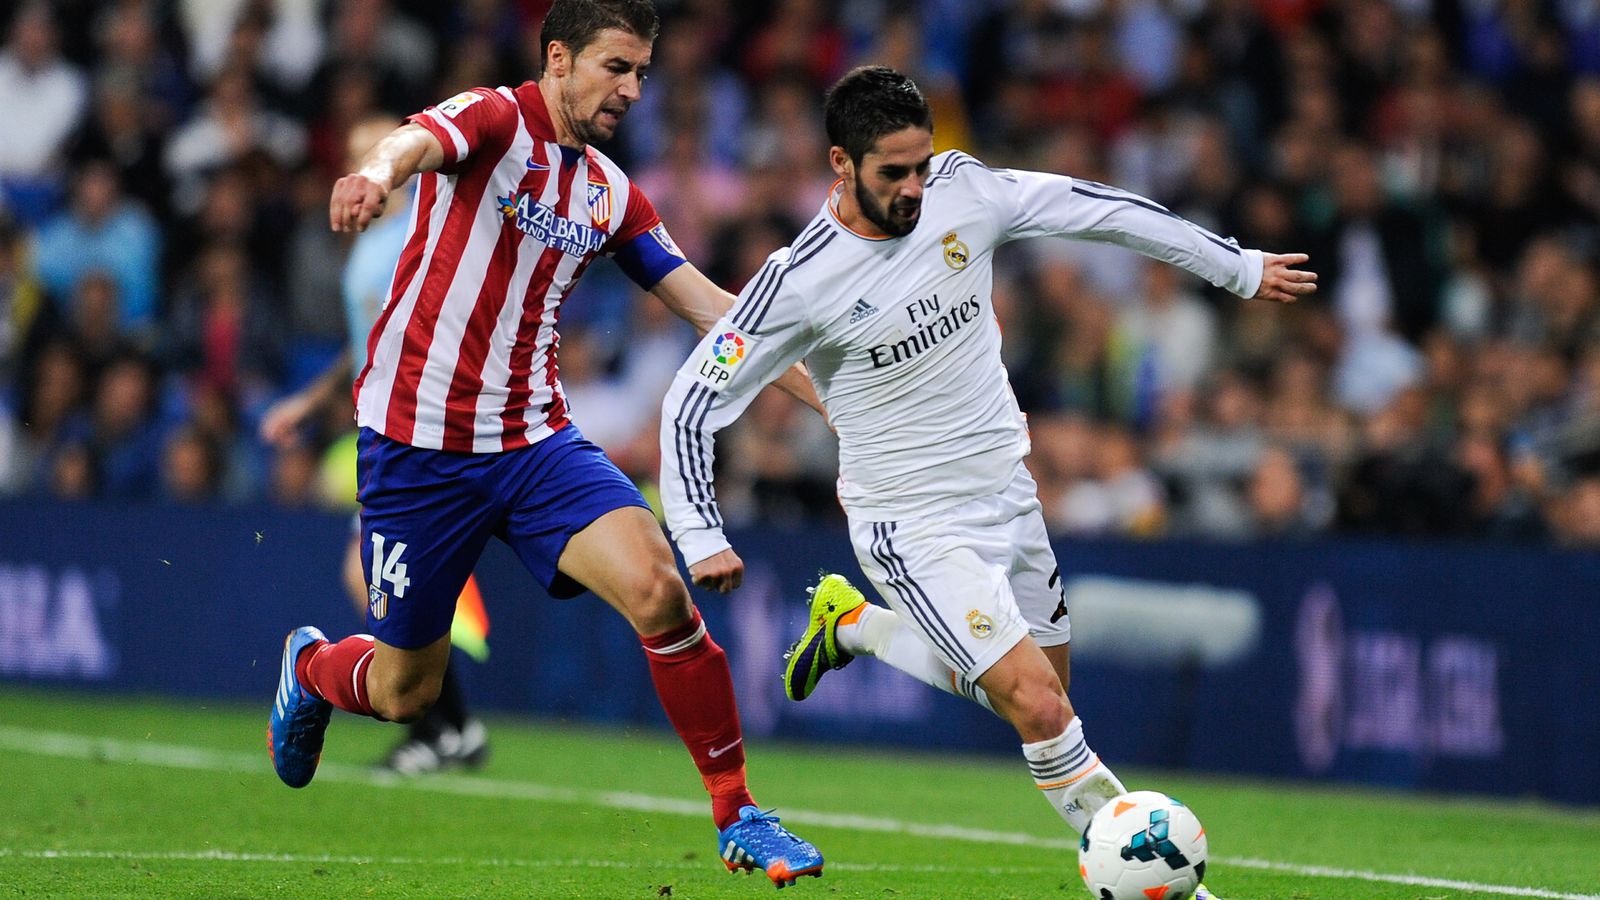 Real Madrid Vs. Atlético Madrid, Liga 2013-2014 Match Recap: Atleti